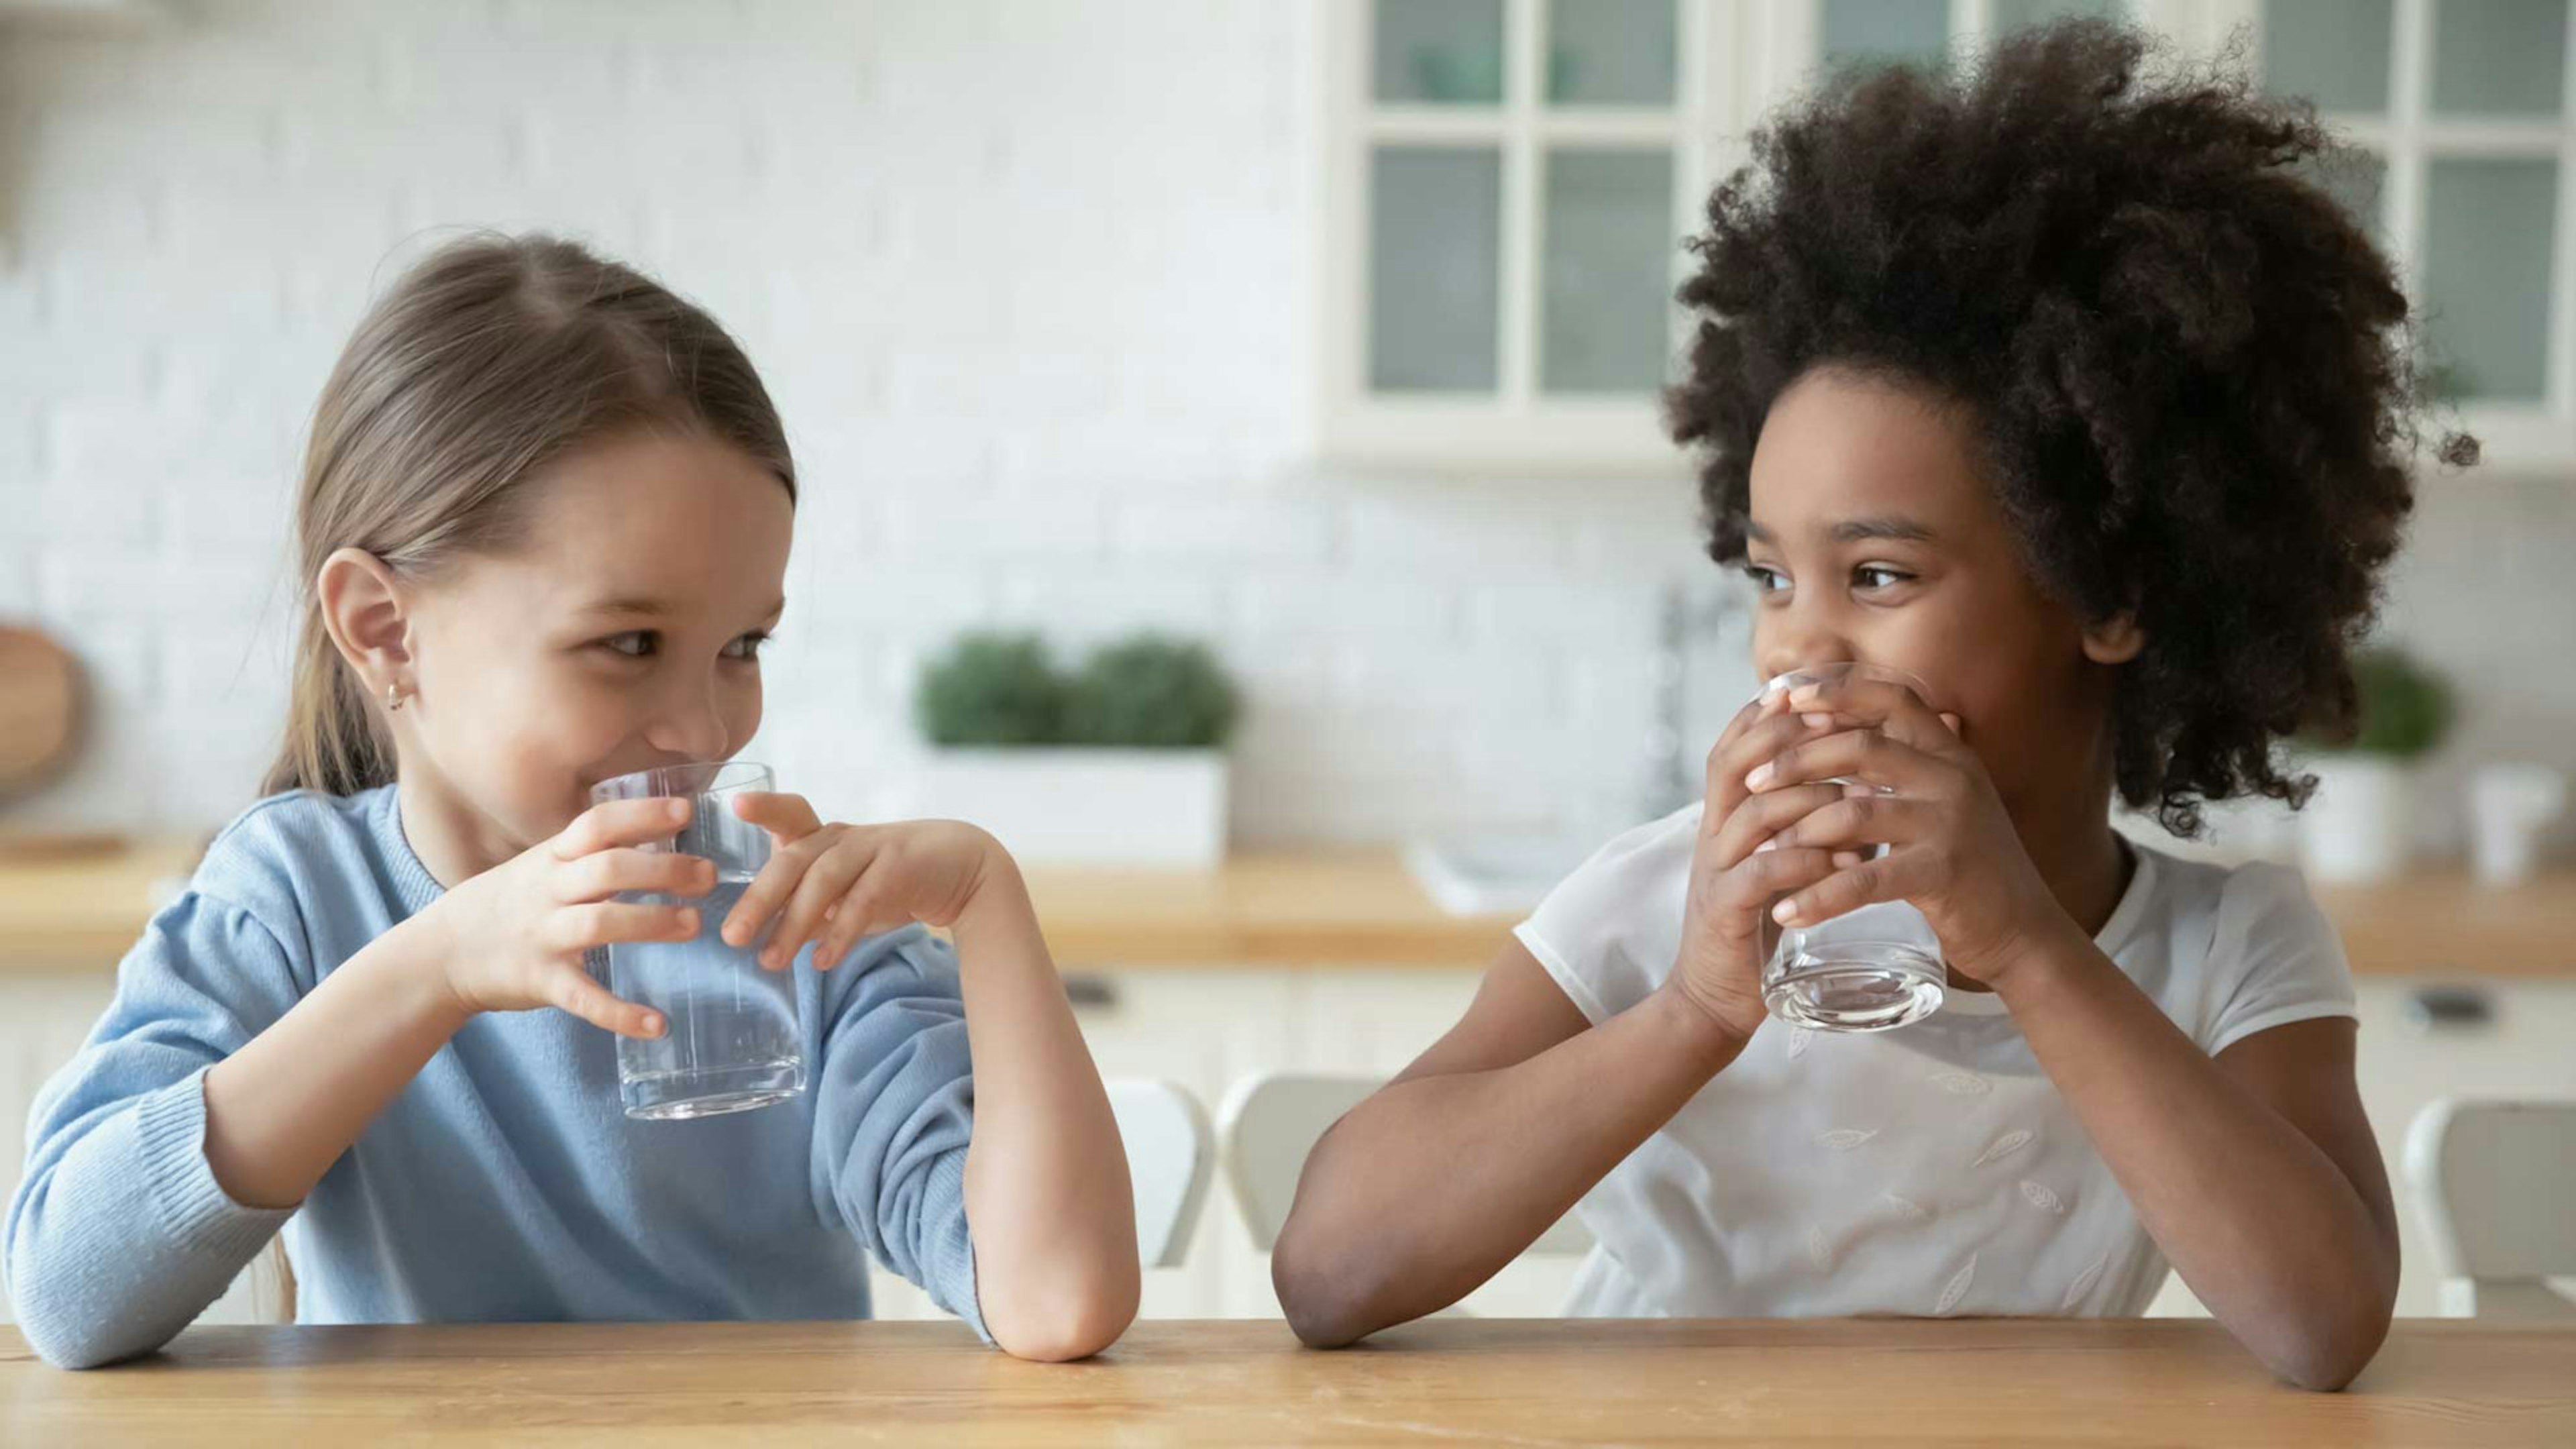 Zwei kleine Mädchen sitzen bei einem Glas Wasser am Küchentisch